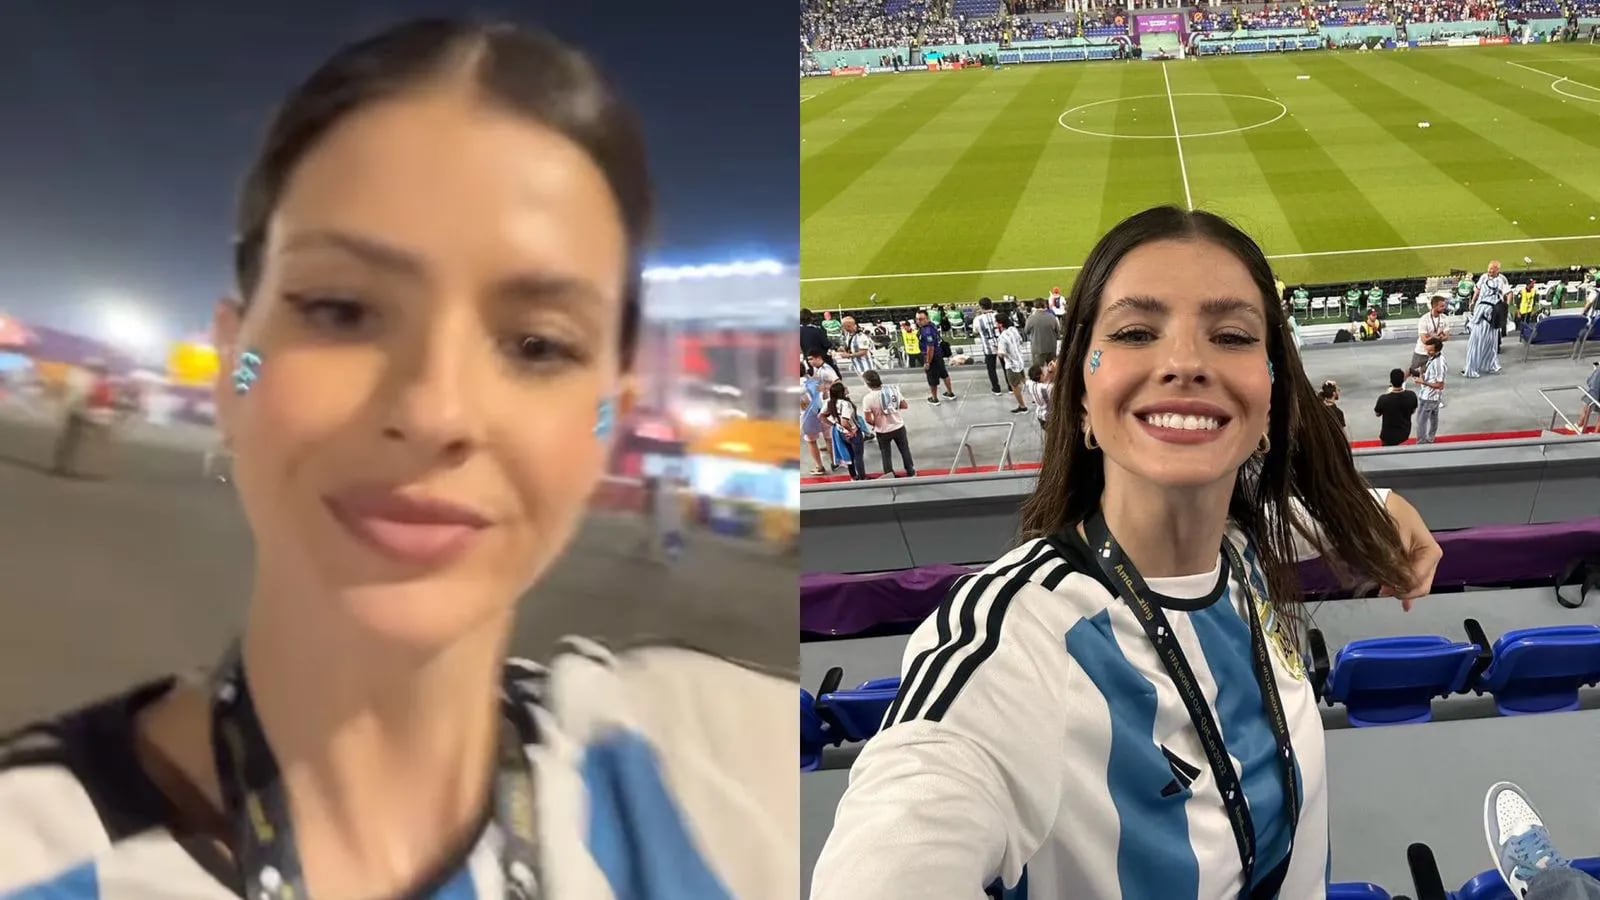 La China Suárez festejó fuerte el triunfo de Argentina y derrapó en el Mundial Qatar 2022: “No puedo parar”